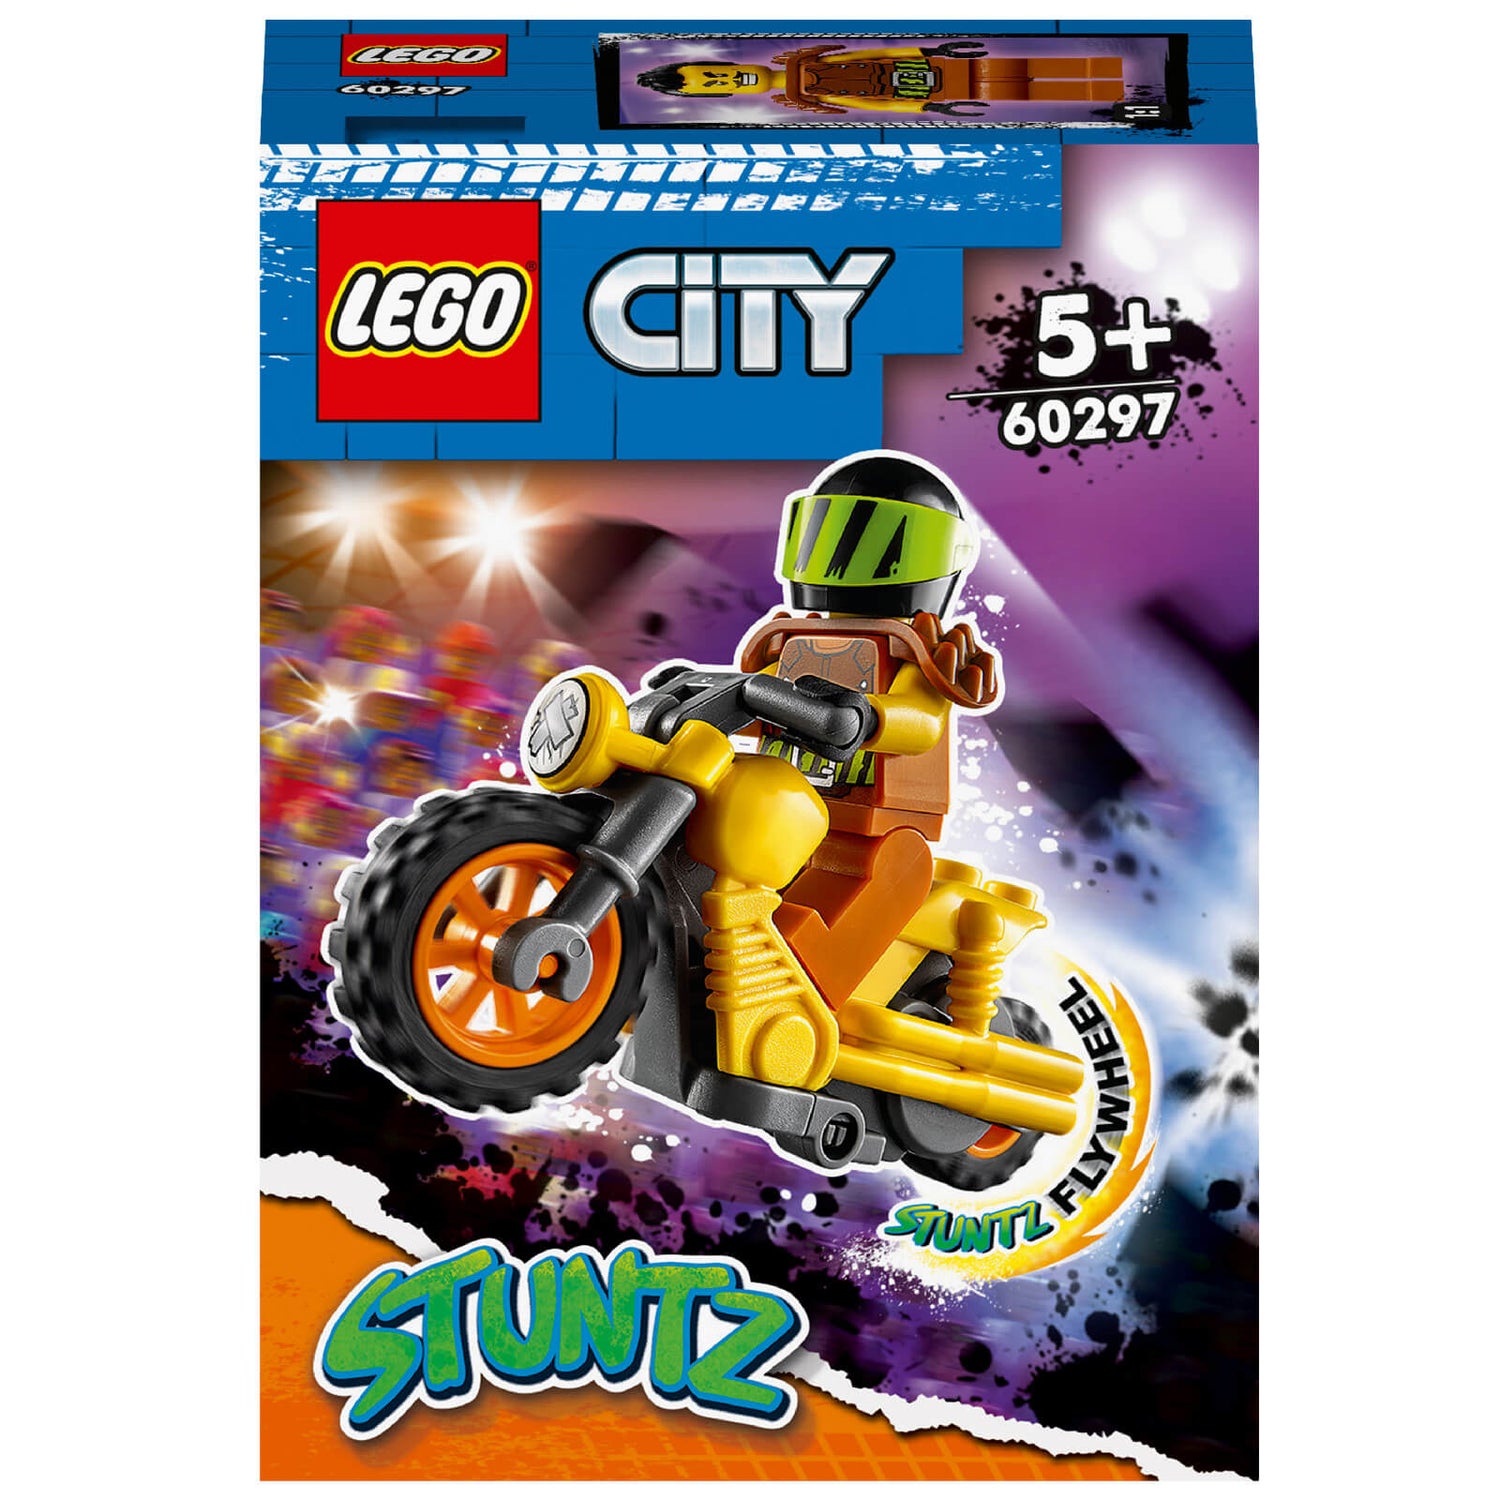 LEGO City: Stuntz Demolition Stunt Bike Toy Motorbike Set (60297)